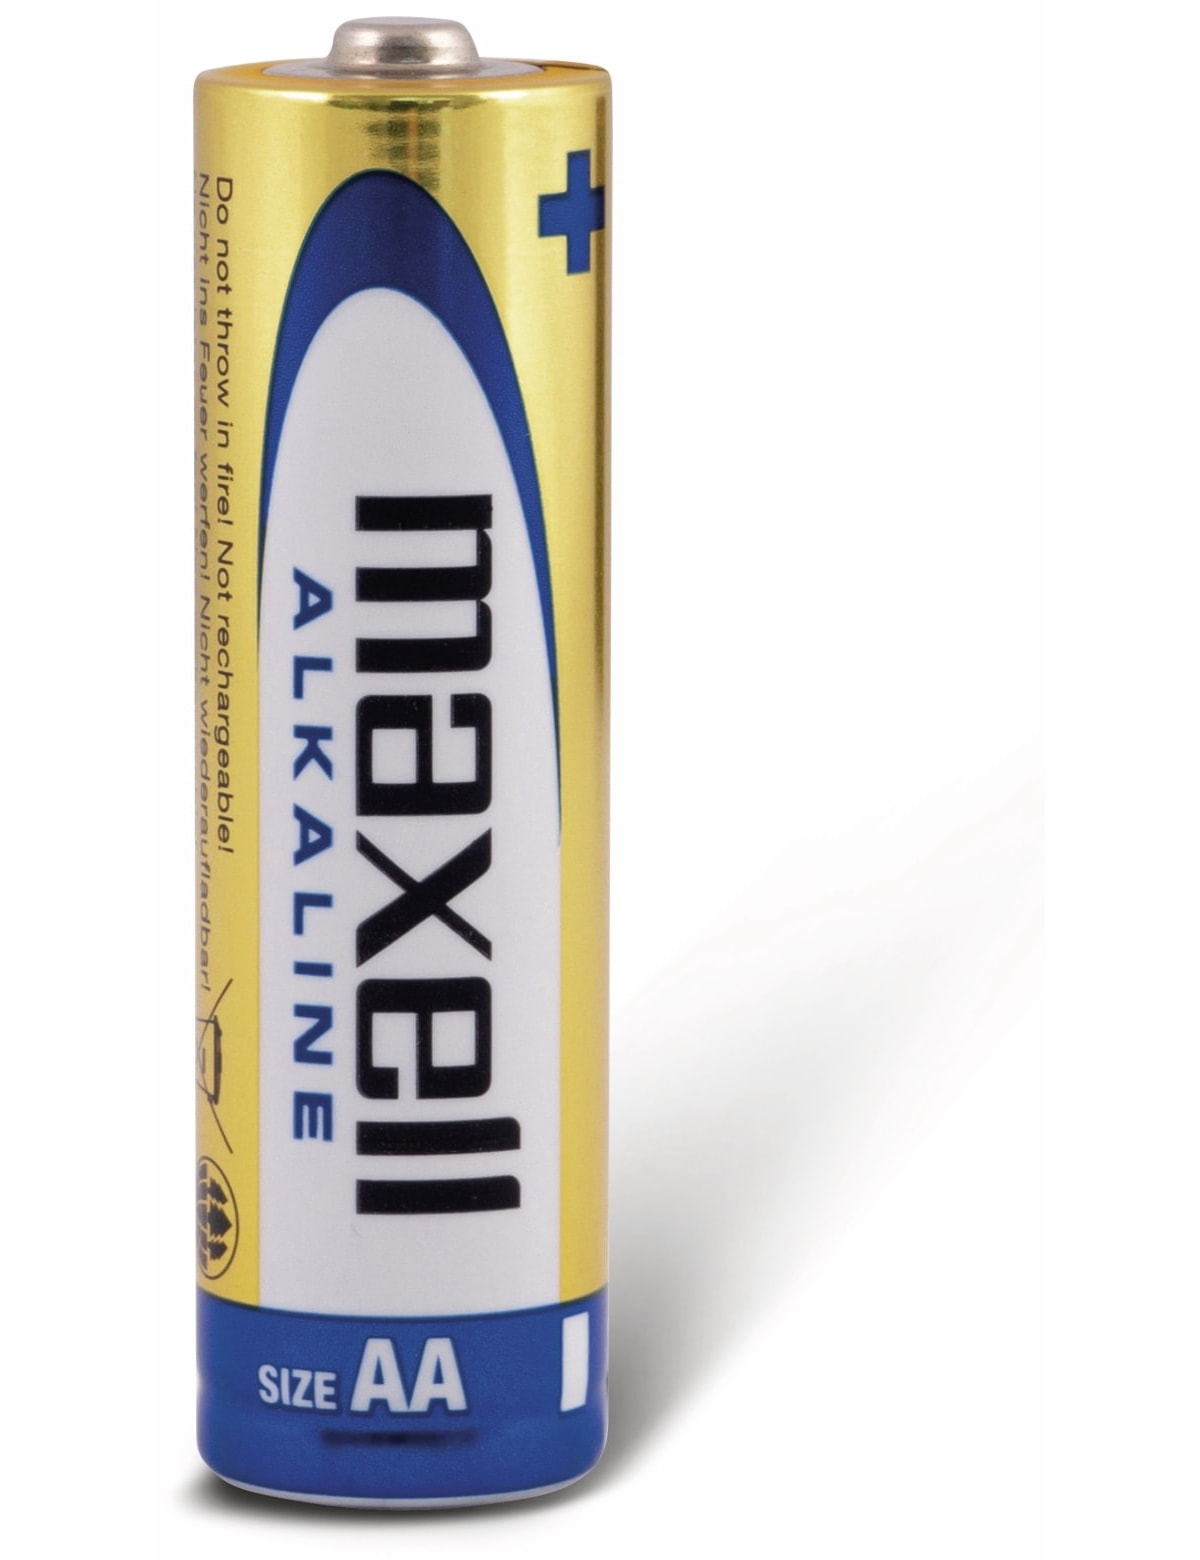 MAXELL Mignon-Batterie Alkaline, AA, LR6, 24 Stück